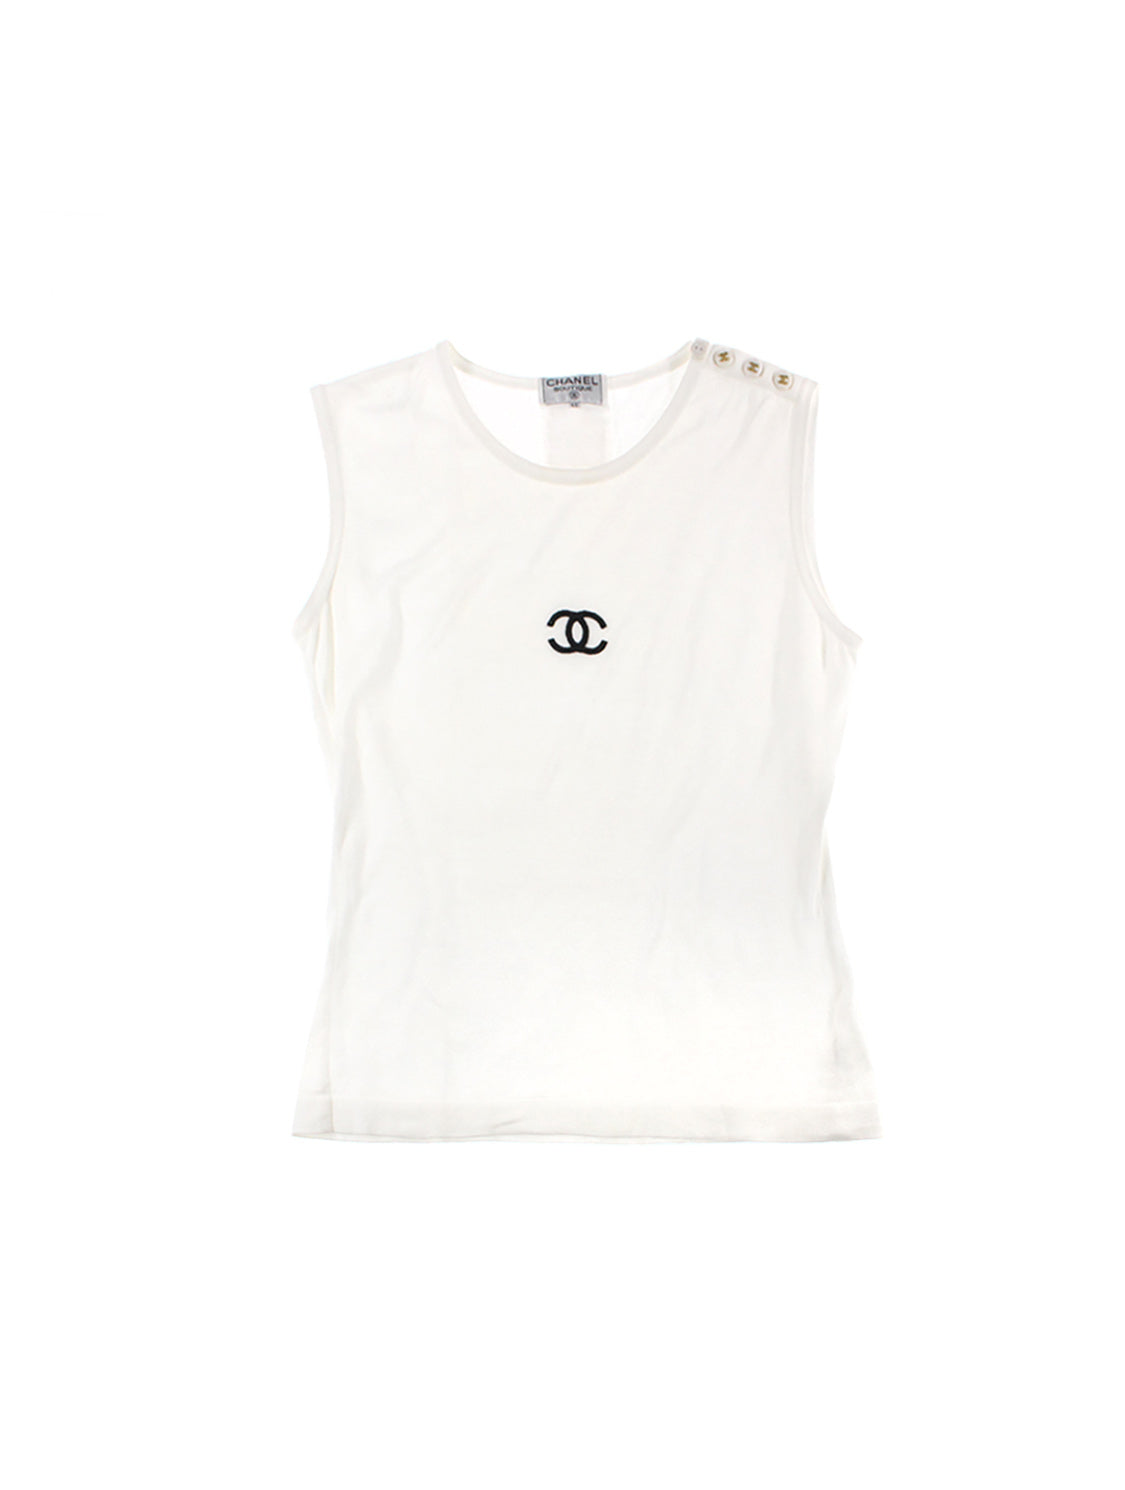 Chanel White Logo Cotton Tank